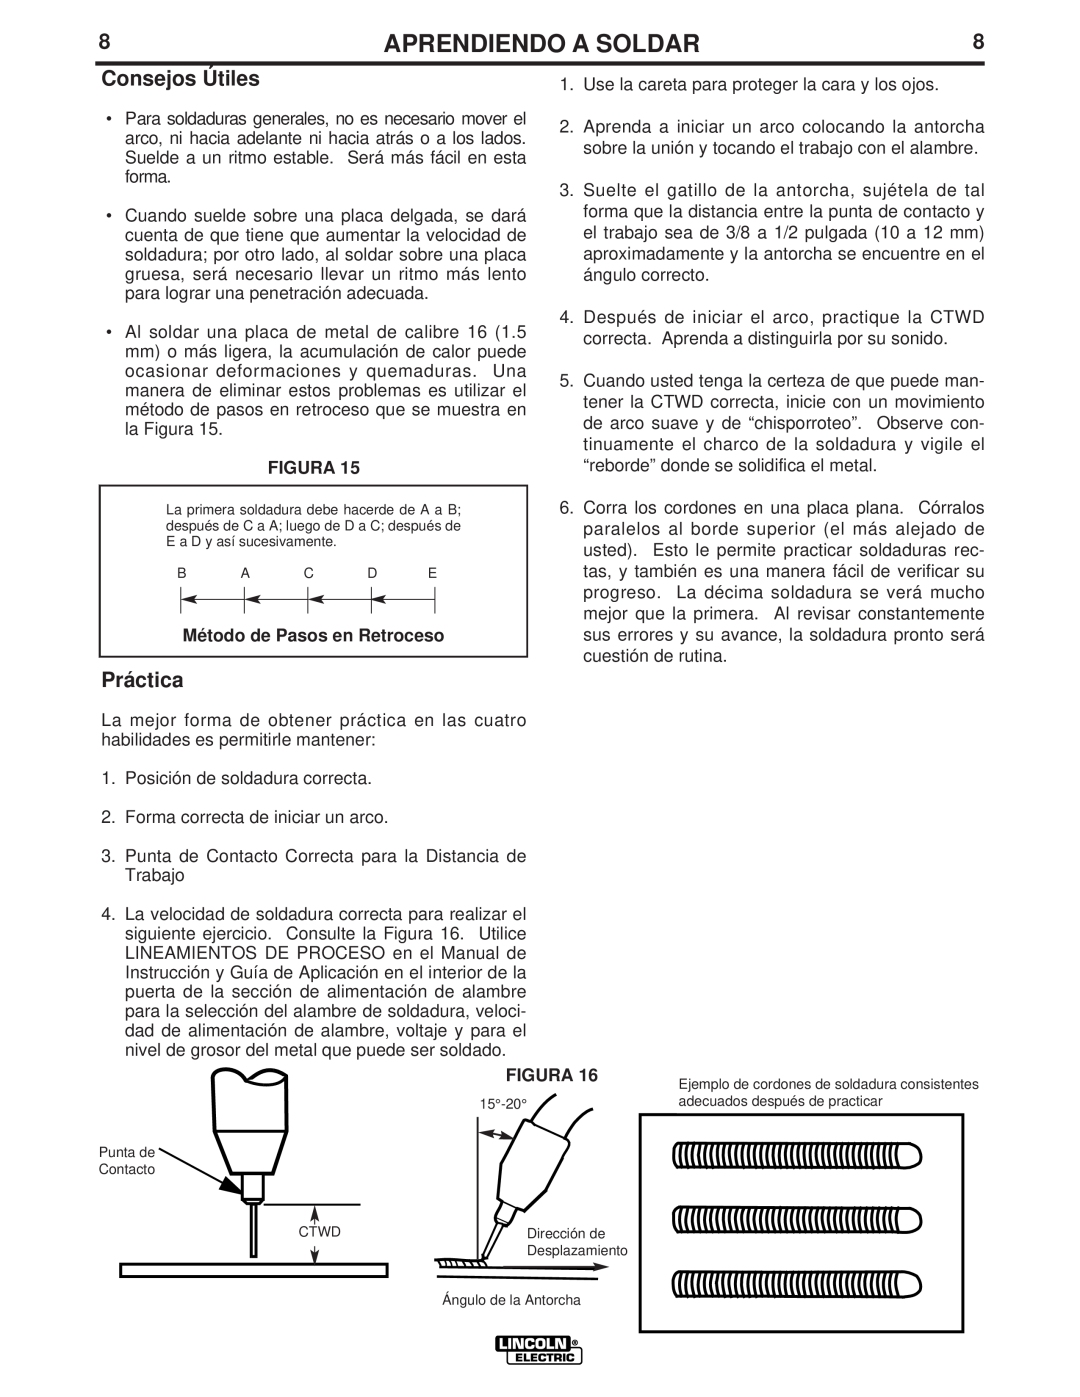 Lincoln Electric LTW1 manual Consejos Útiles, Práctica, Método de Pasos en Retroceso, Aprendiendo A Soldar, Figura 